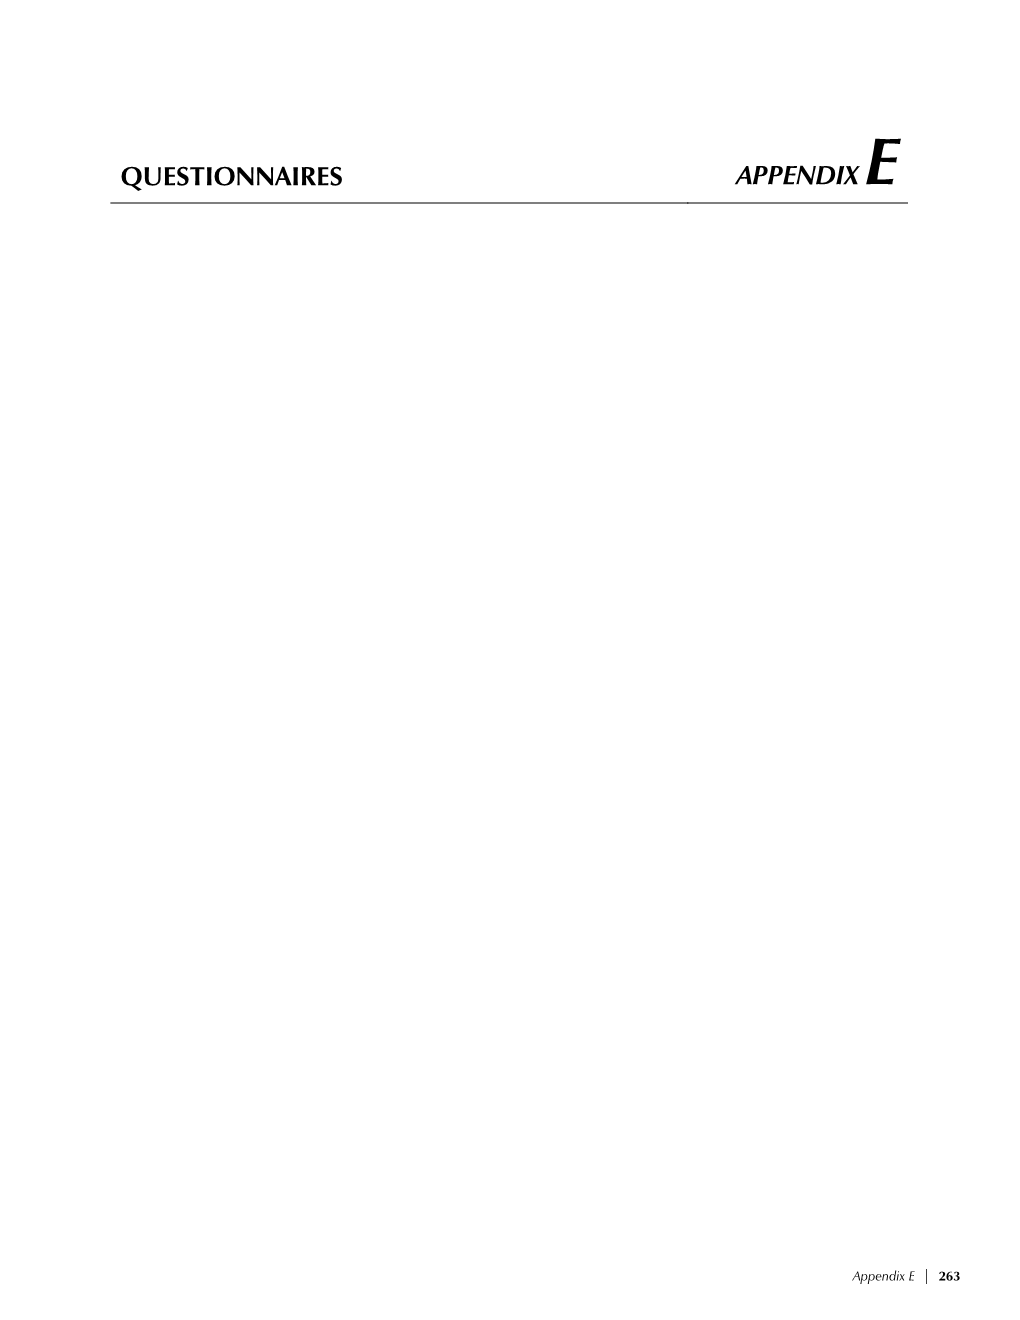 Questionnaires Appendix E